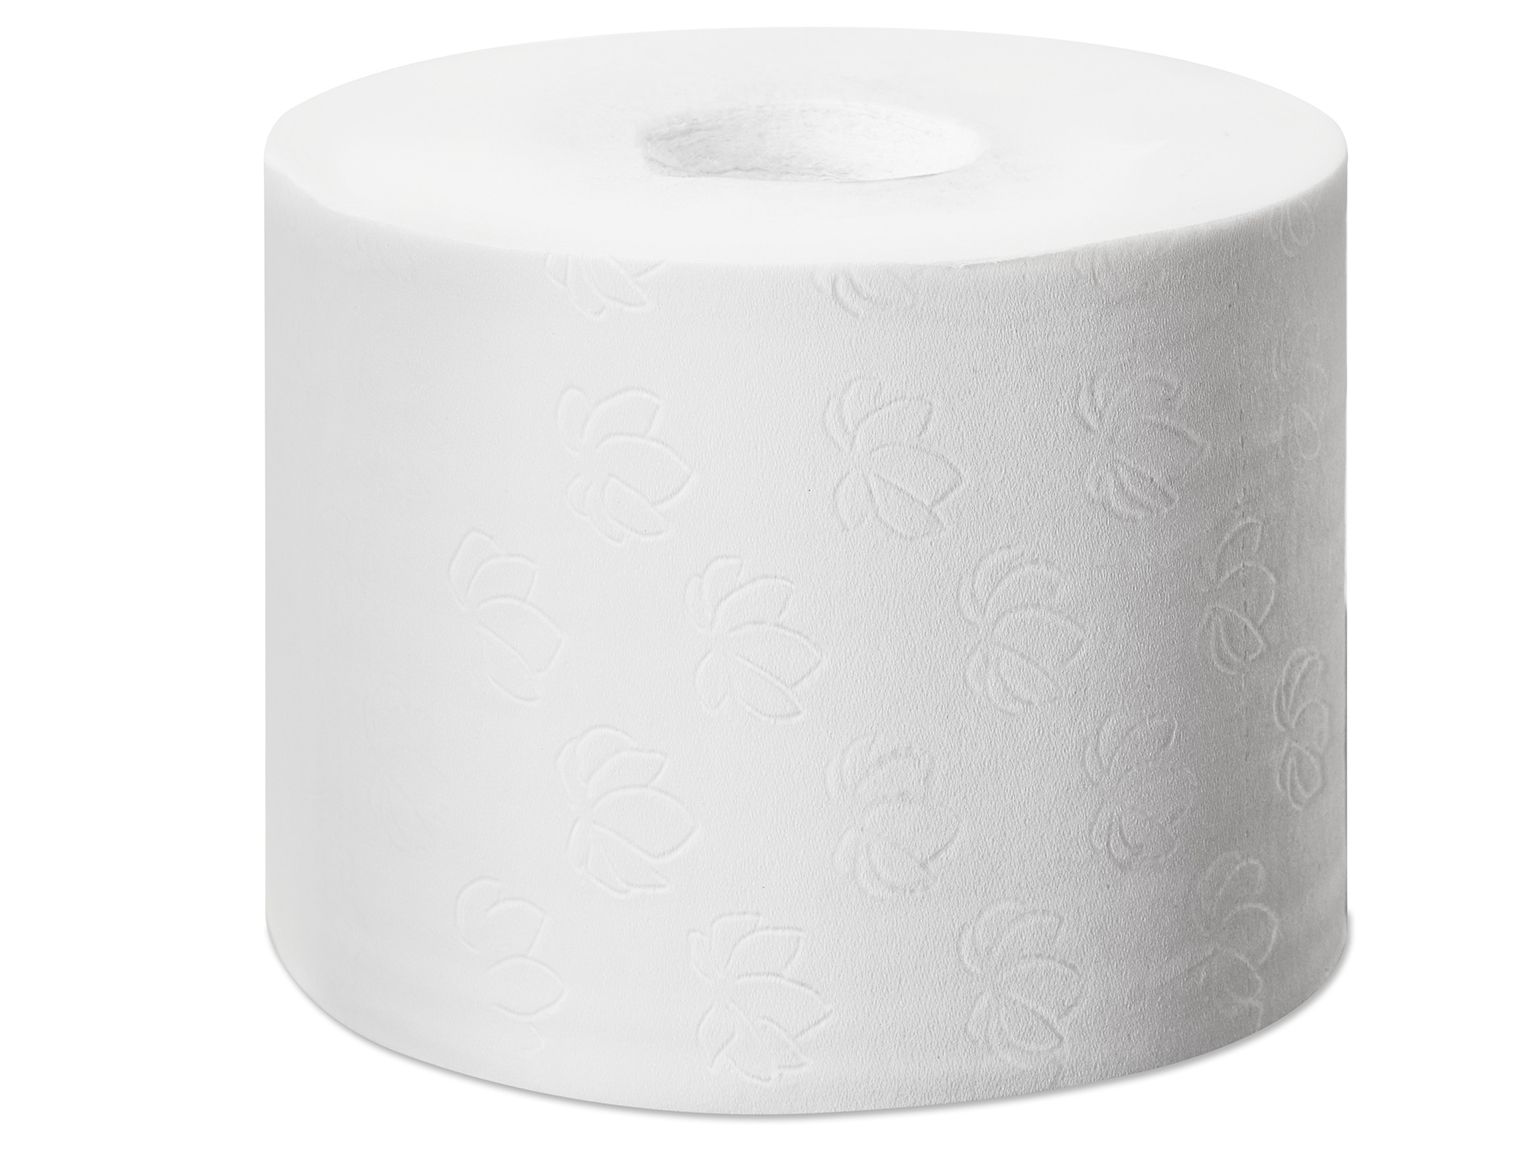 WC-PAPIER 3-LAGIG TORK  68.8 lfm, 9.3 cm x 68.8 lfm, Tissue